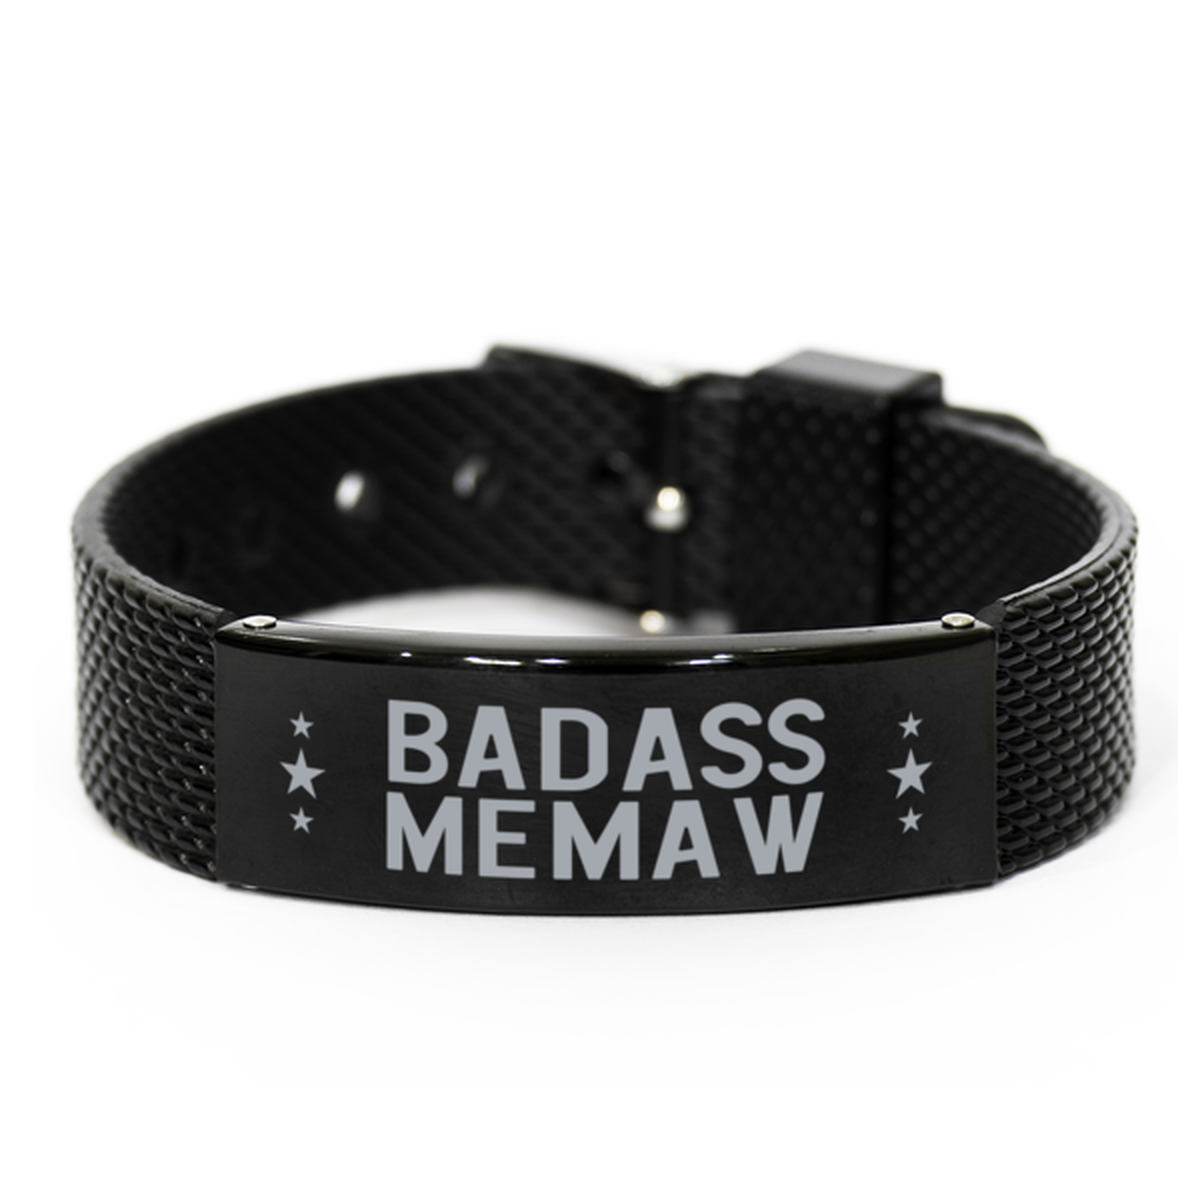 Memaw Black Shark Mesh Bracelet, Badass Memaw, Funny Family Gifts For Memaw From Granddaughter Grandson